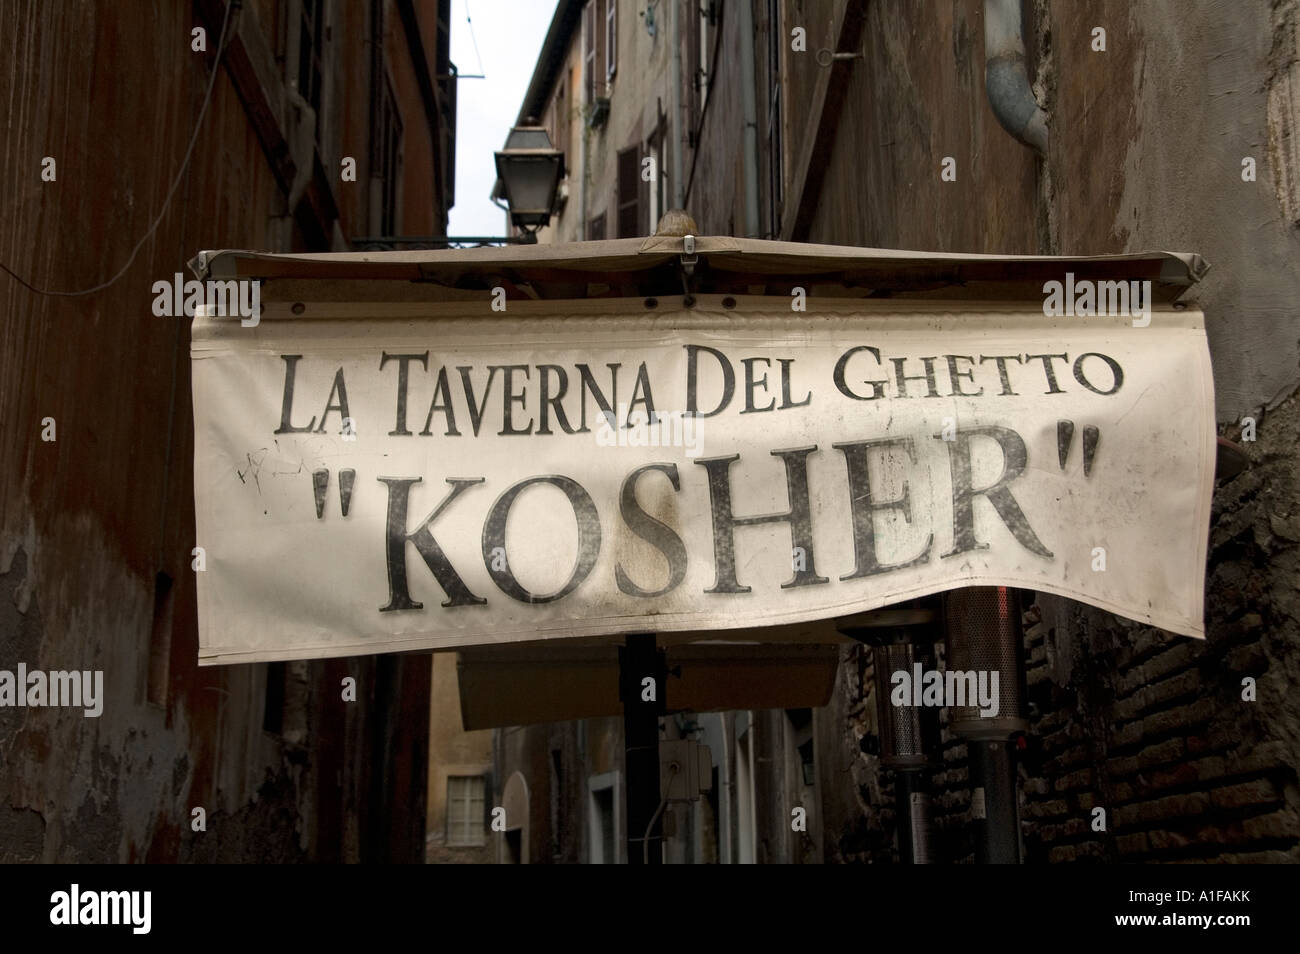 Das Restaurant Sign of Taverna del Ghetto Kosher serviert jüdisch-römische Küche im alten jüdischen Ghetto in Rom, Italien Stockfoto